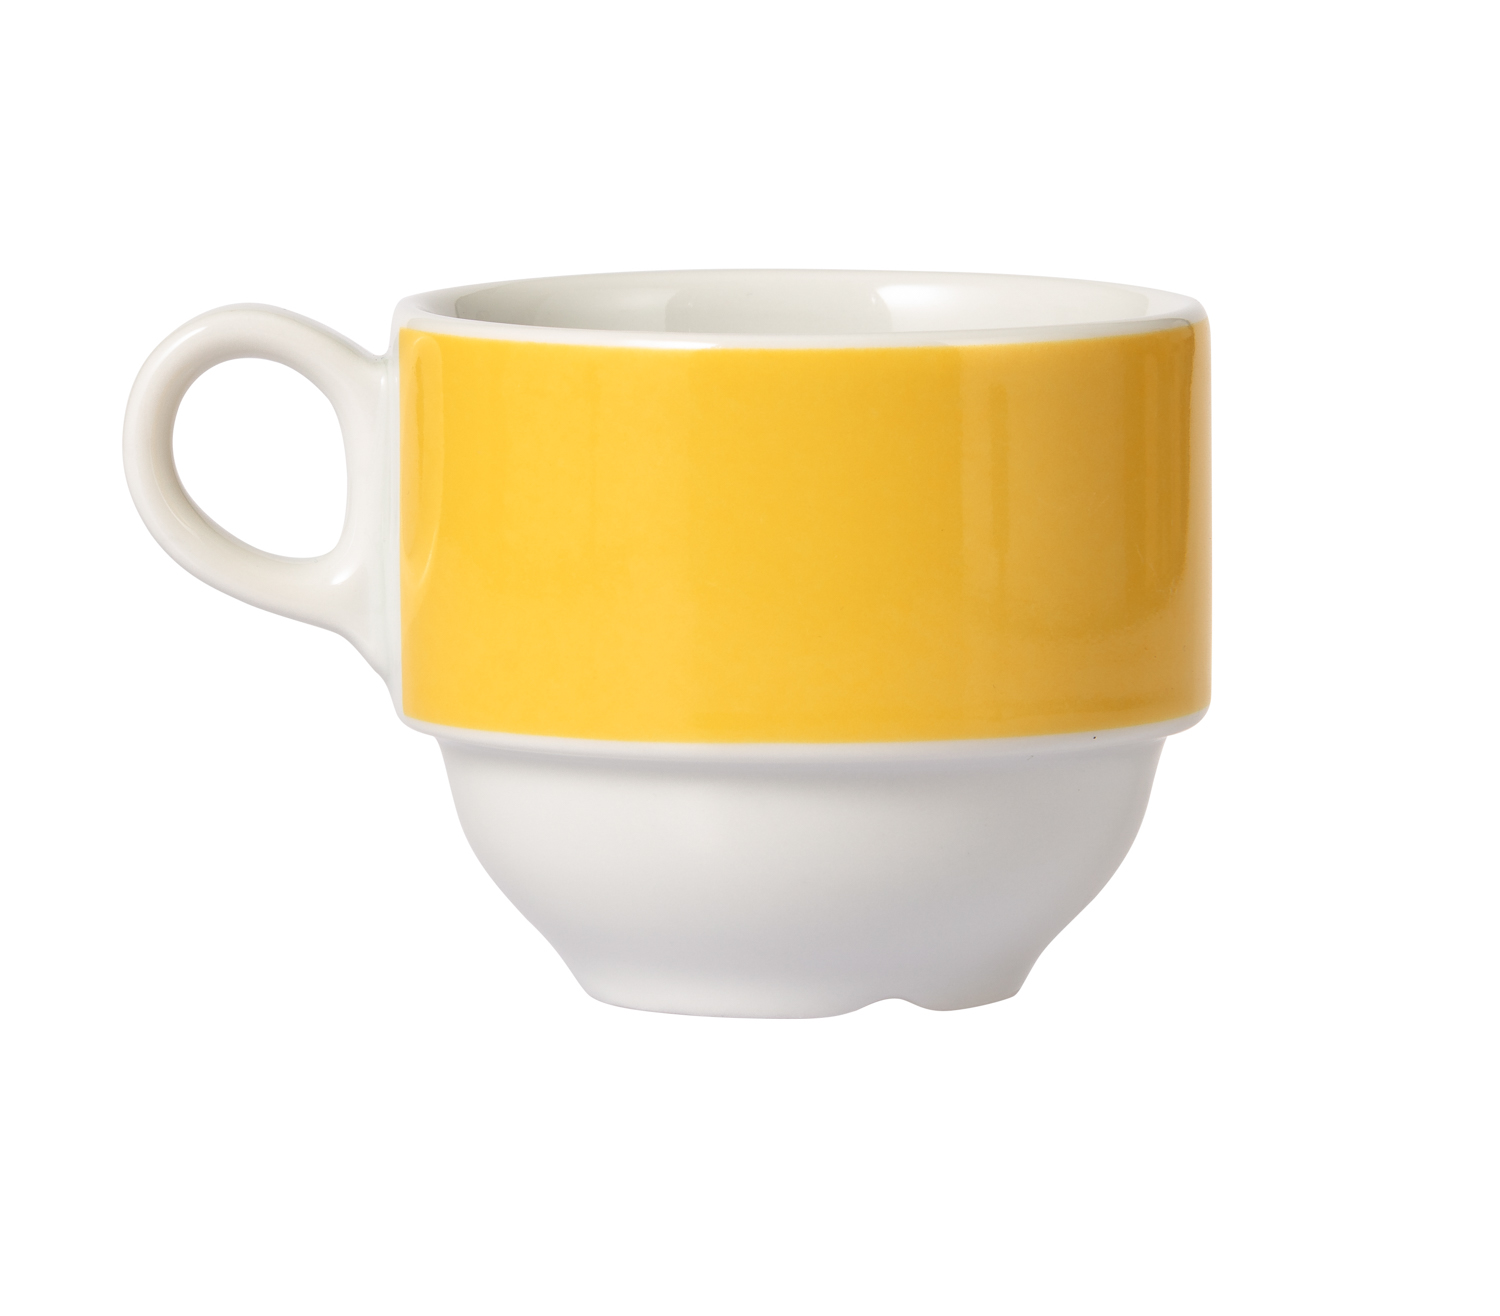 MERIDIAN Kaffee-Obertasse, 0,19 ltr., gelb, aus Porzellan, von Caterado. Made in Europe.